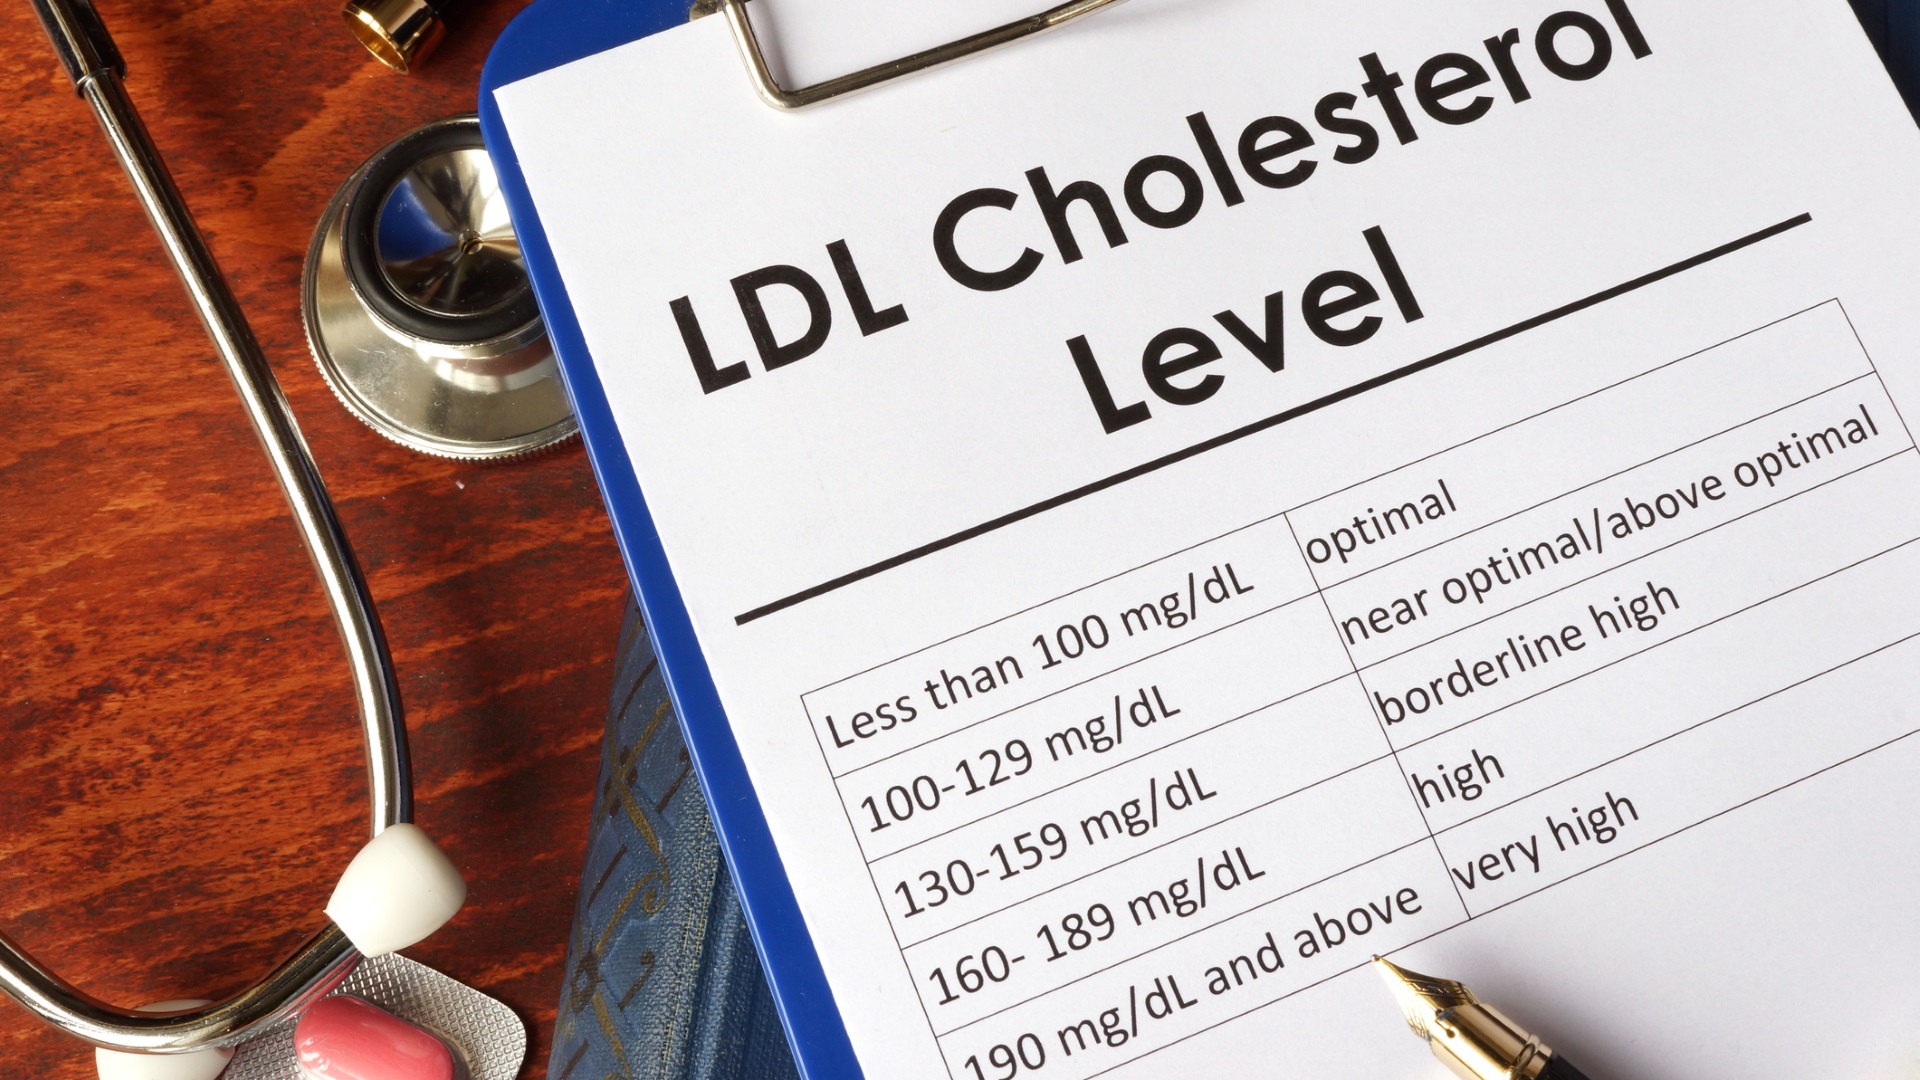 <p><strong>Холестеролът ви ще се понижи</strong></p>

<p>Освен загуба на тегло, вероятно ще забележите и спад на холестерола. До голяма степен нашите гени определят нивото ни на холестерол, но упражненията и диетата също могат да повлияят на нивата му.</p>